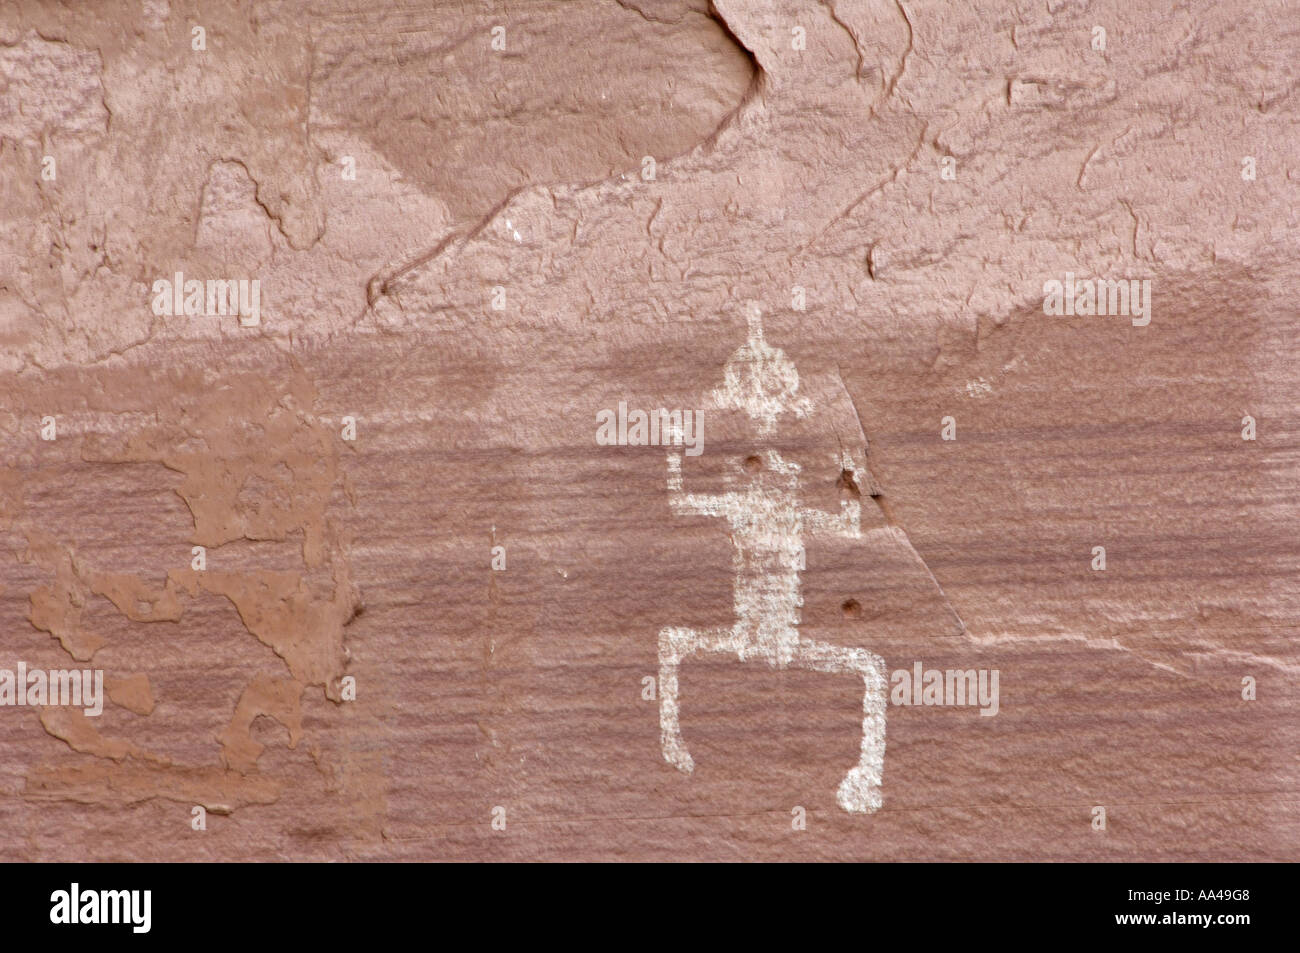 Ancestral Puebloan aka Anasazi pétroglyphes d'une figure humaine sur Cliff dwellings de Canyon de Chelly en Arizona. Photographie numérique Banque D'Images